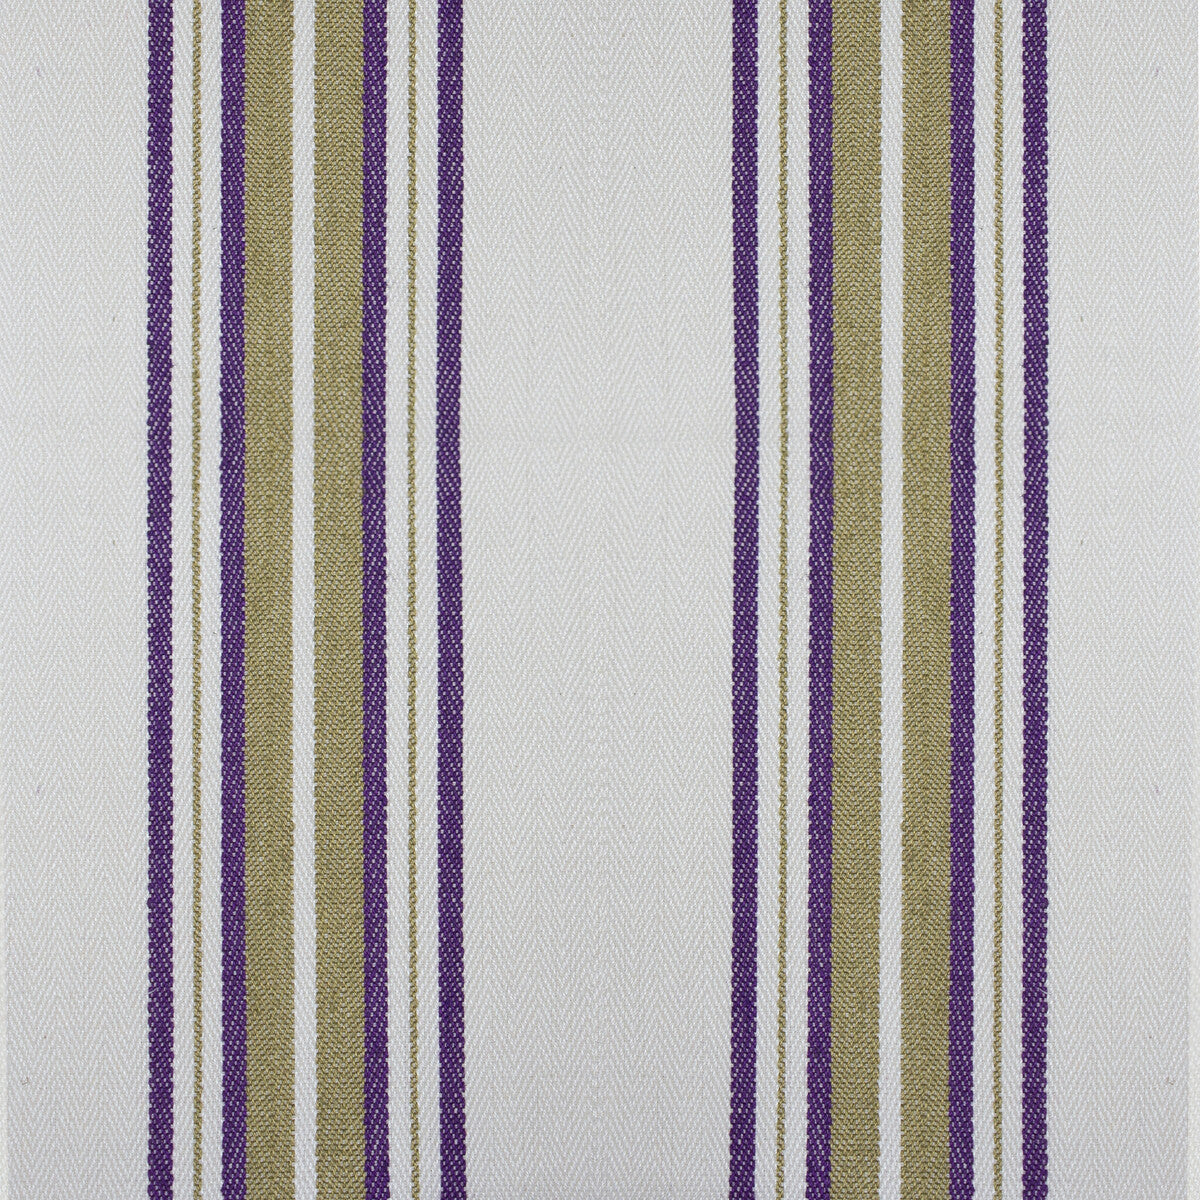 Nueva York fabric in purple/verde color - pattern GDT5573.004.0 - by Gaston y Daniela in the Gaston Luis Bustamante collection